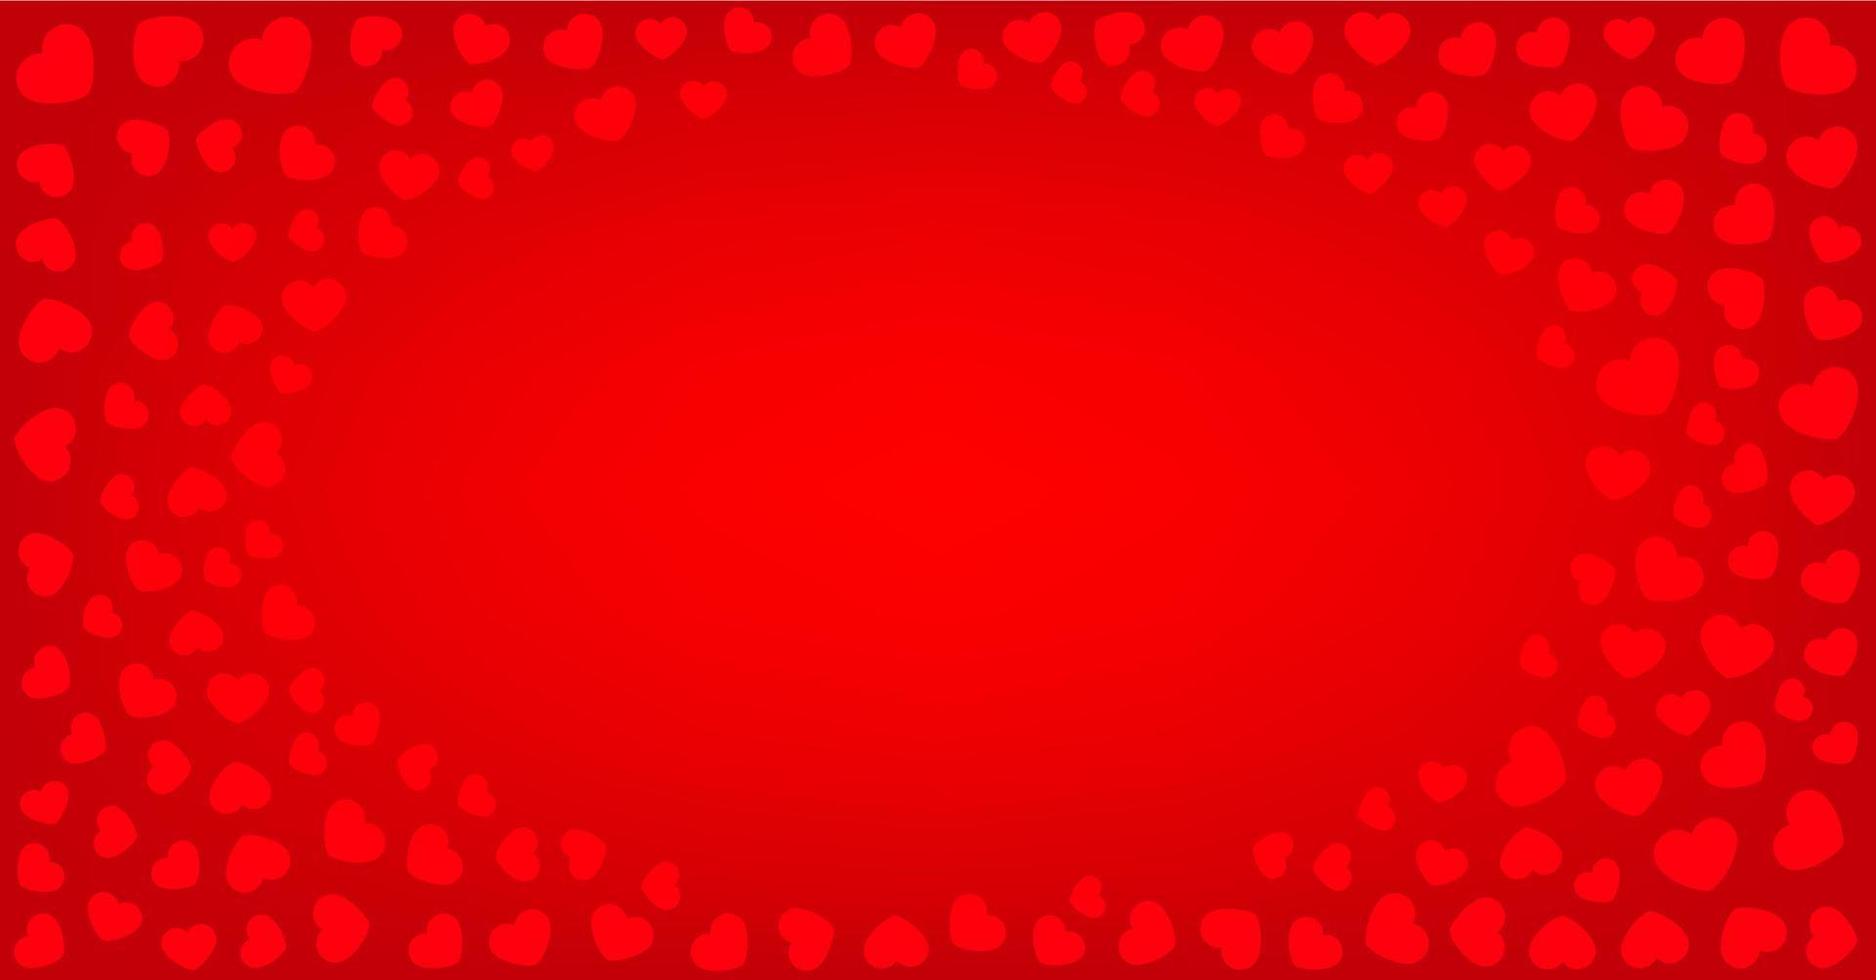 banner horizontal de saudação vermelha com corações. ilustração vetorial. vetor